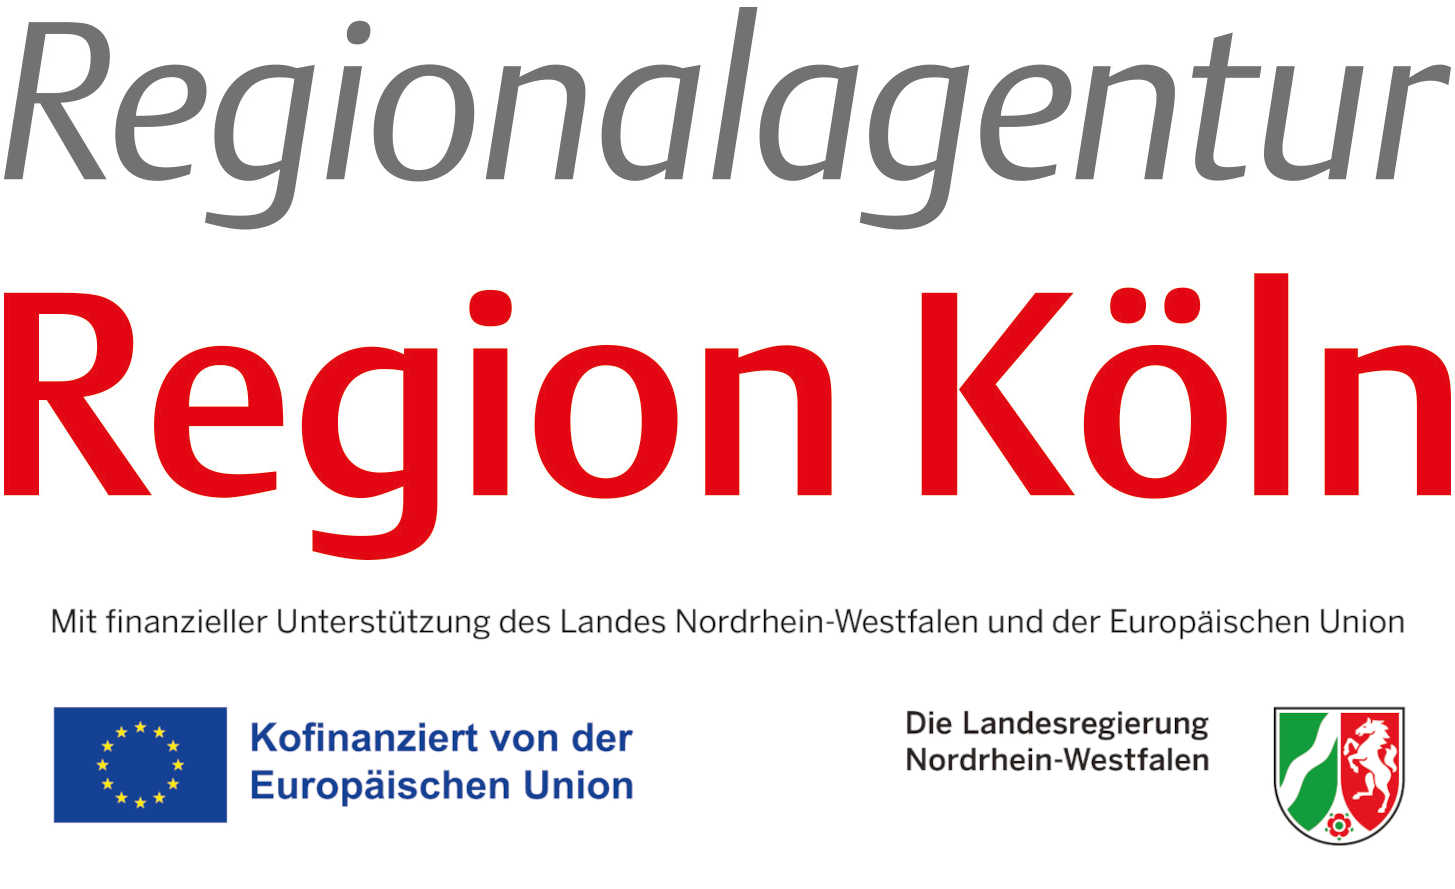 Regionalagentur Region Köln